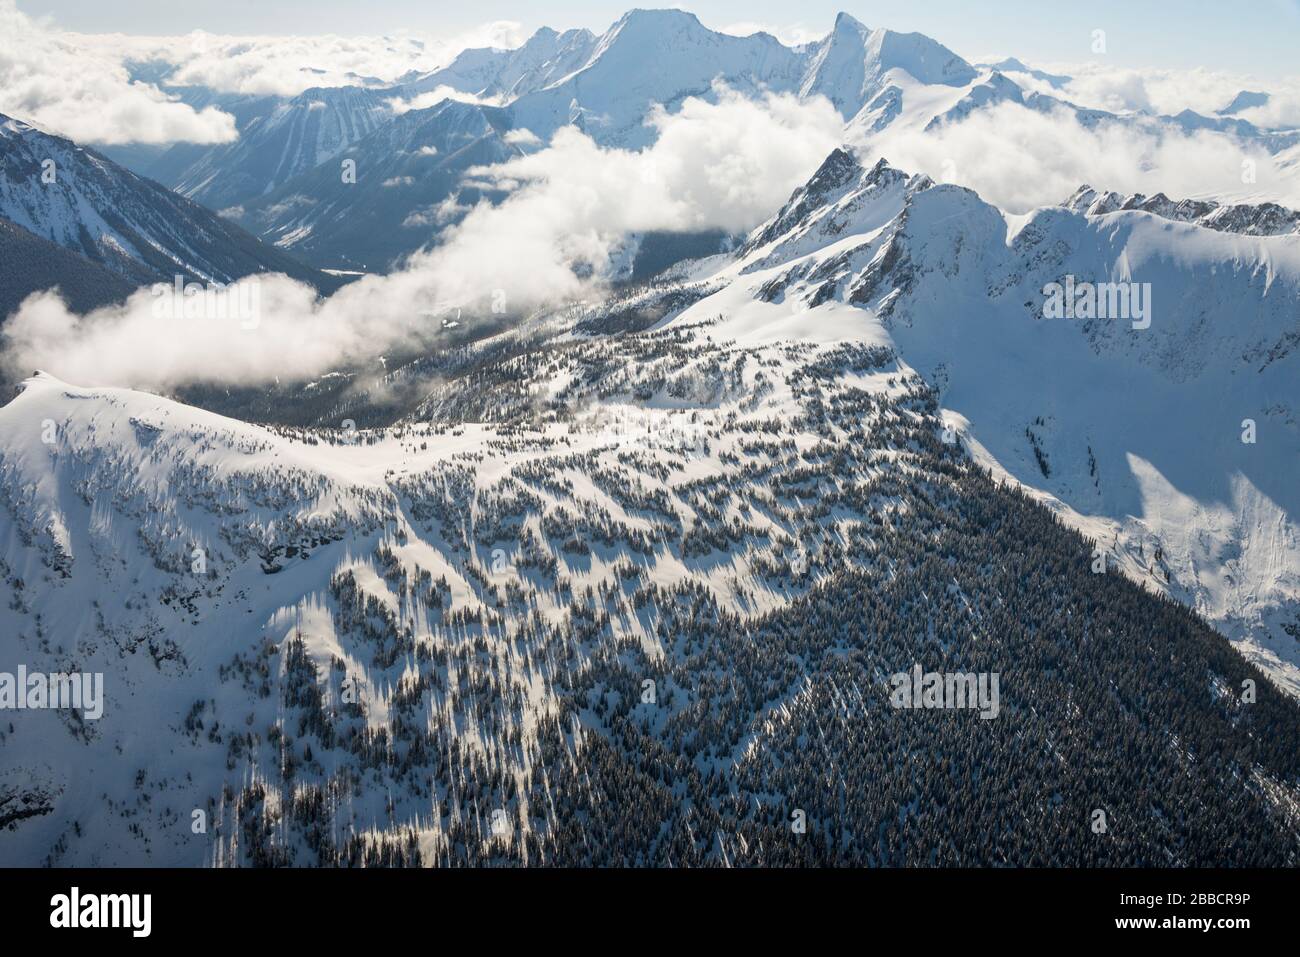 Jumbo Pass in winter, British Columbia Stock Photo